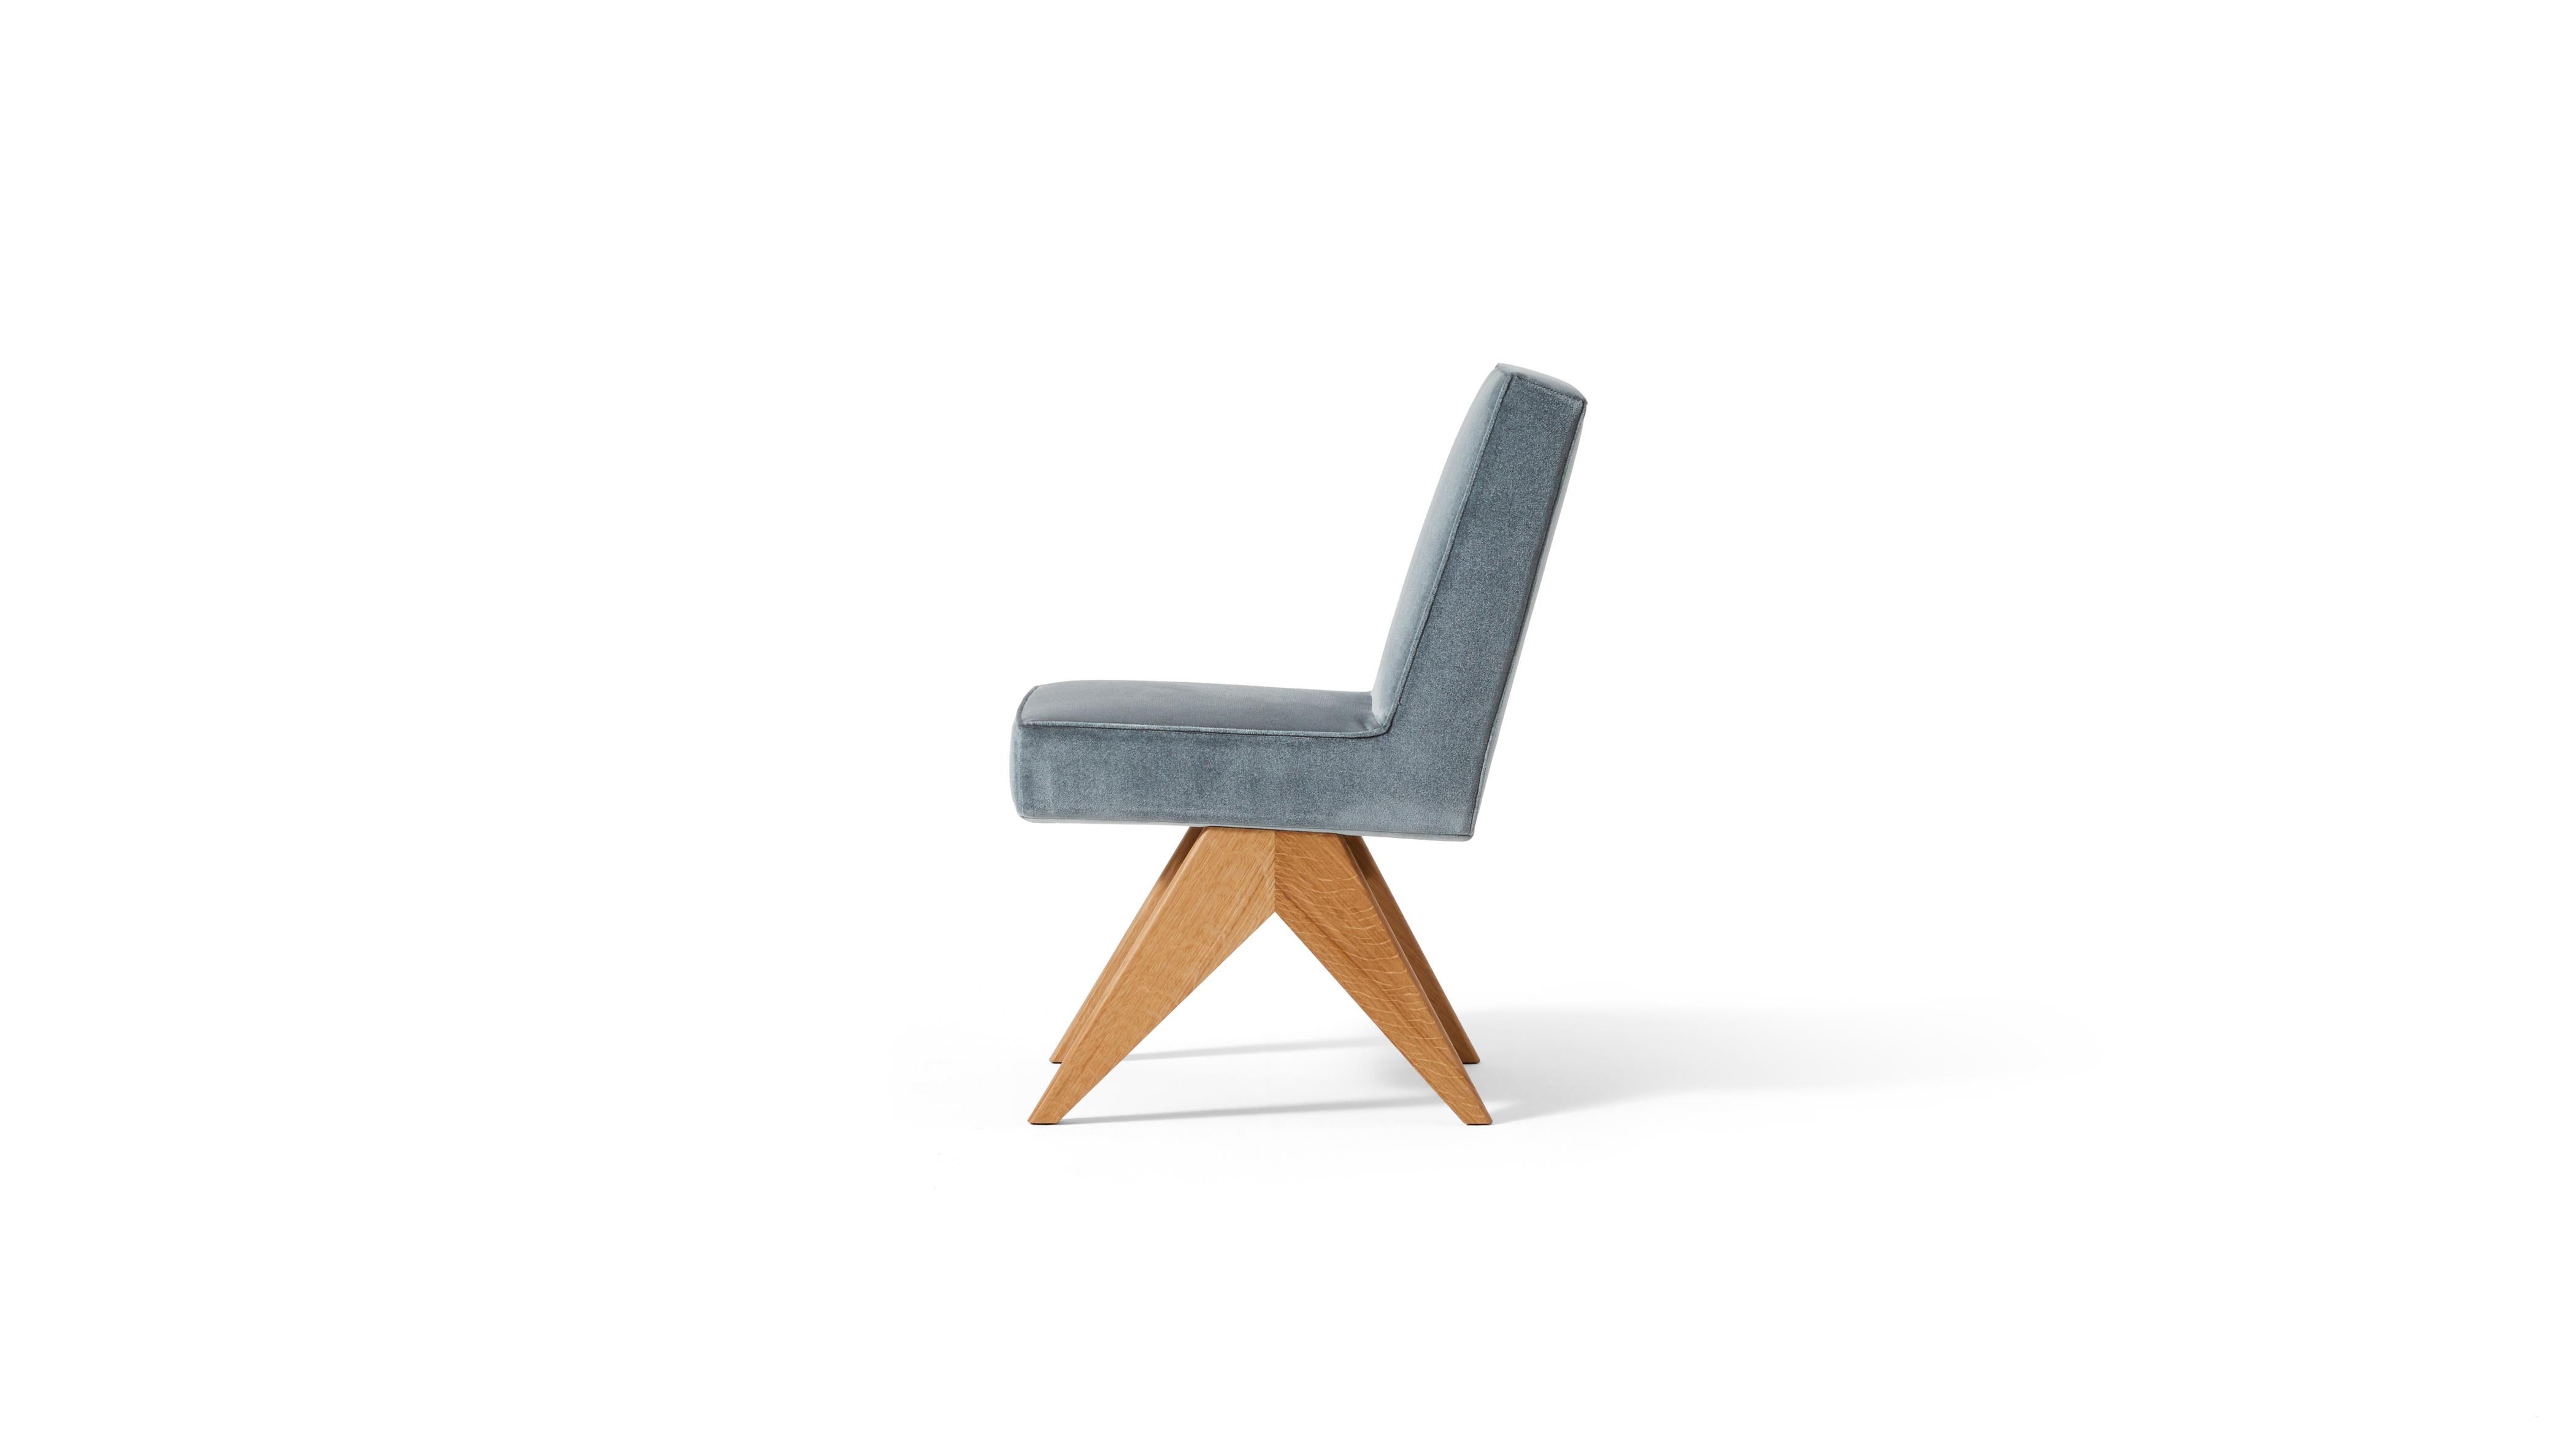 Chaise de comité conçue par Pierre Jeanneret vers 1950, relancée en 2022.
Fabriqué par Cassina en Italie.

La chaise Comité est présentée dans sa version originale et dans une nouvelle interprétation plus polyvalente, sans accoudoirs, pour